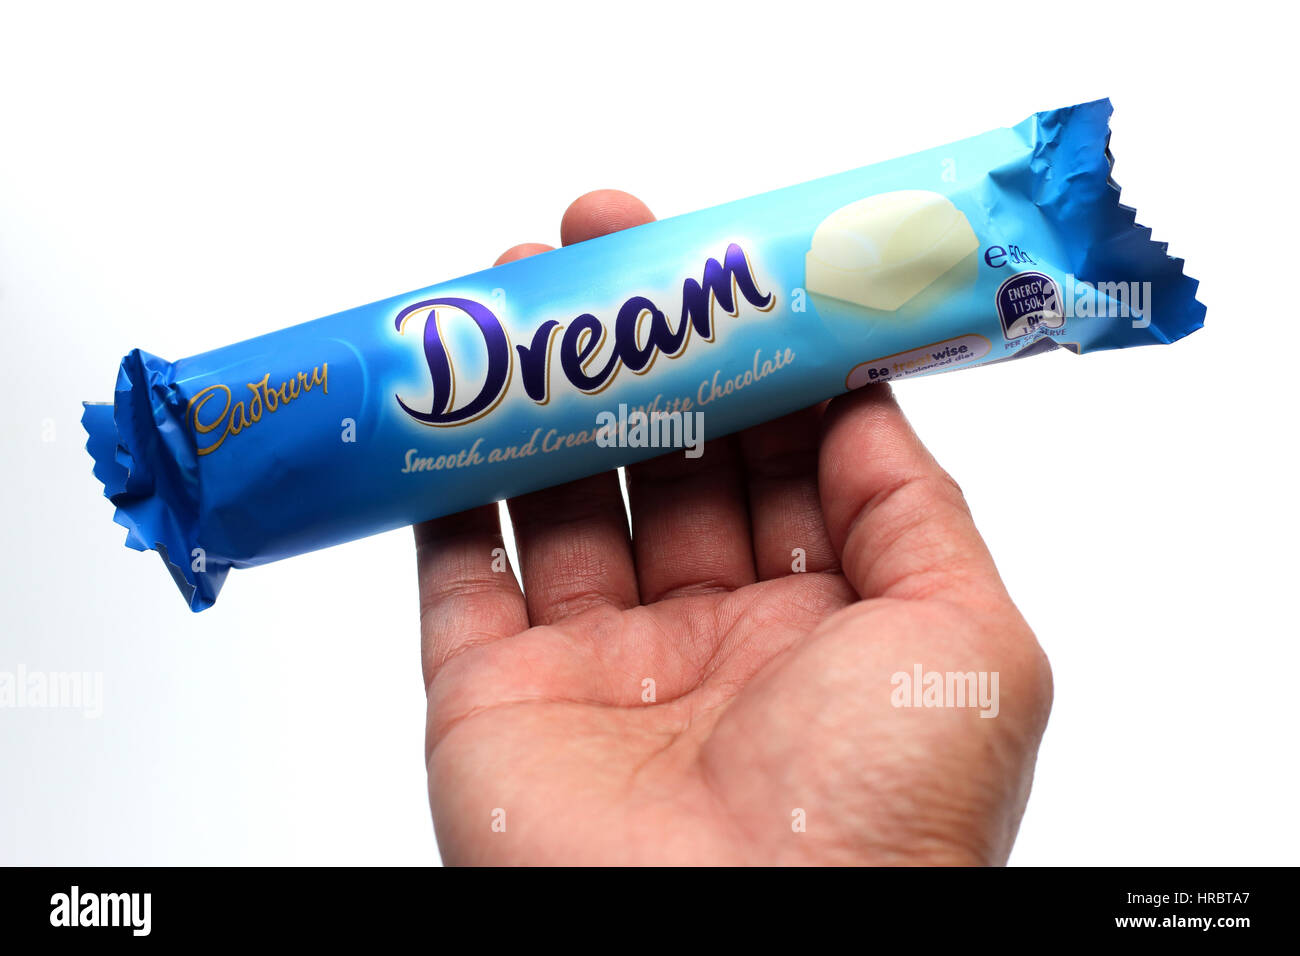 Hand holding Australia Cadbury white chocolate bar isolated against white background Stock Photo